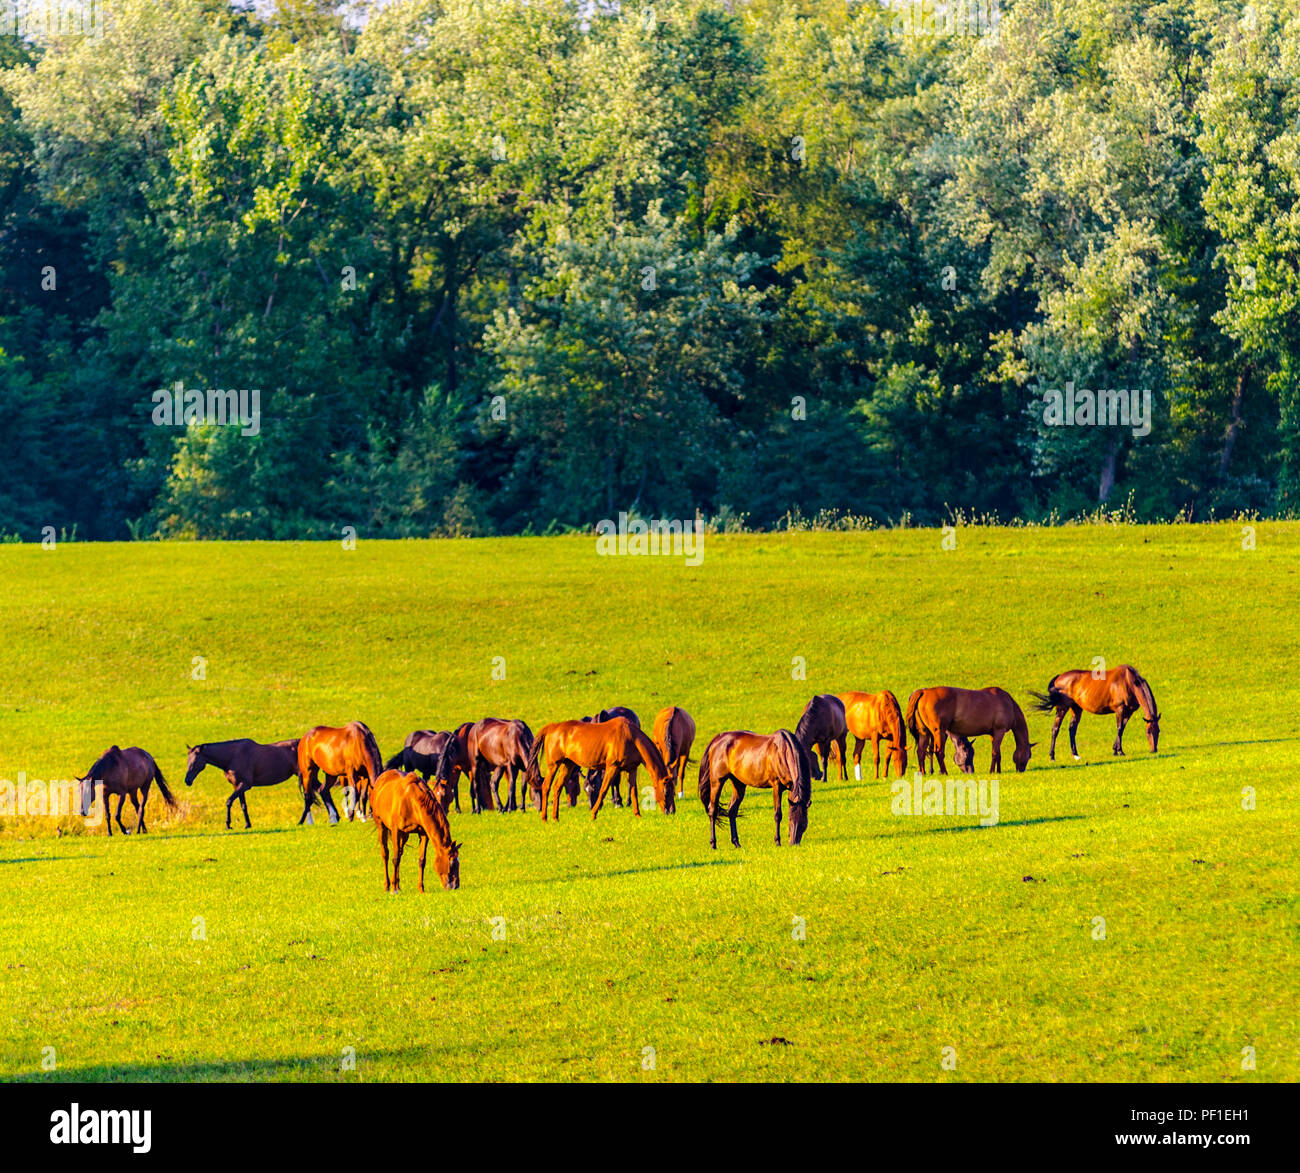 Una mandria di cavalli, Equus ferus caballus, illuminata dal sole che tramonta, pascolano in un pascolo nel nord dell'Indiana Foto Stock